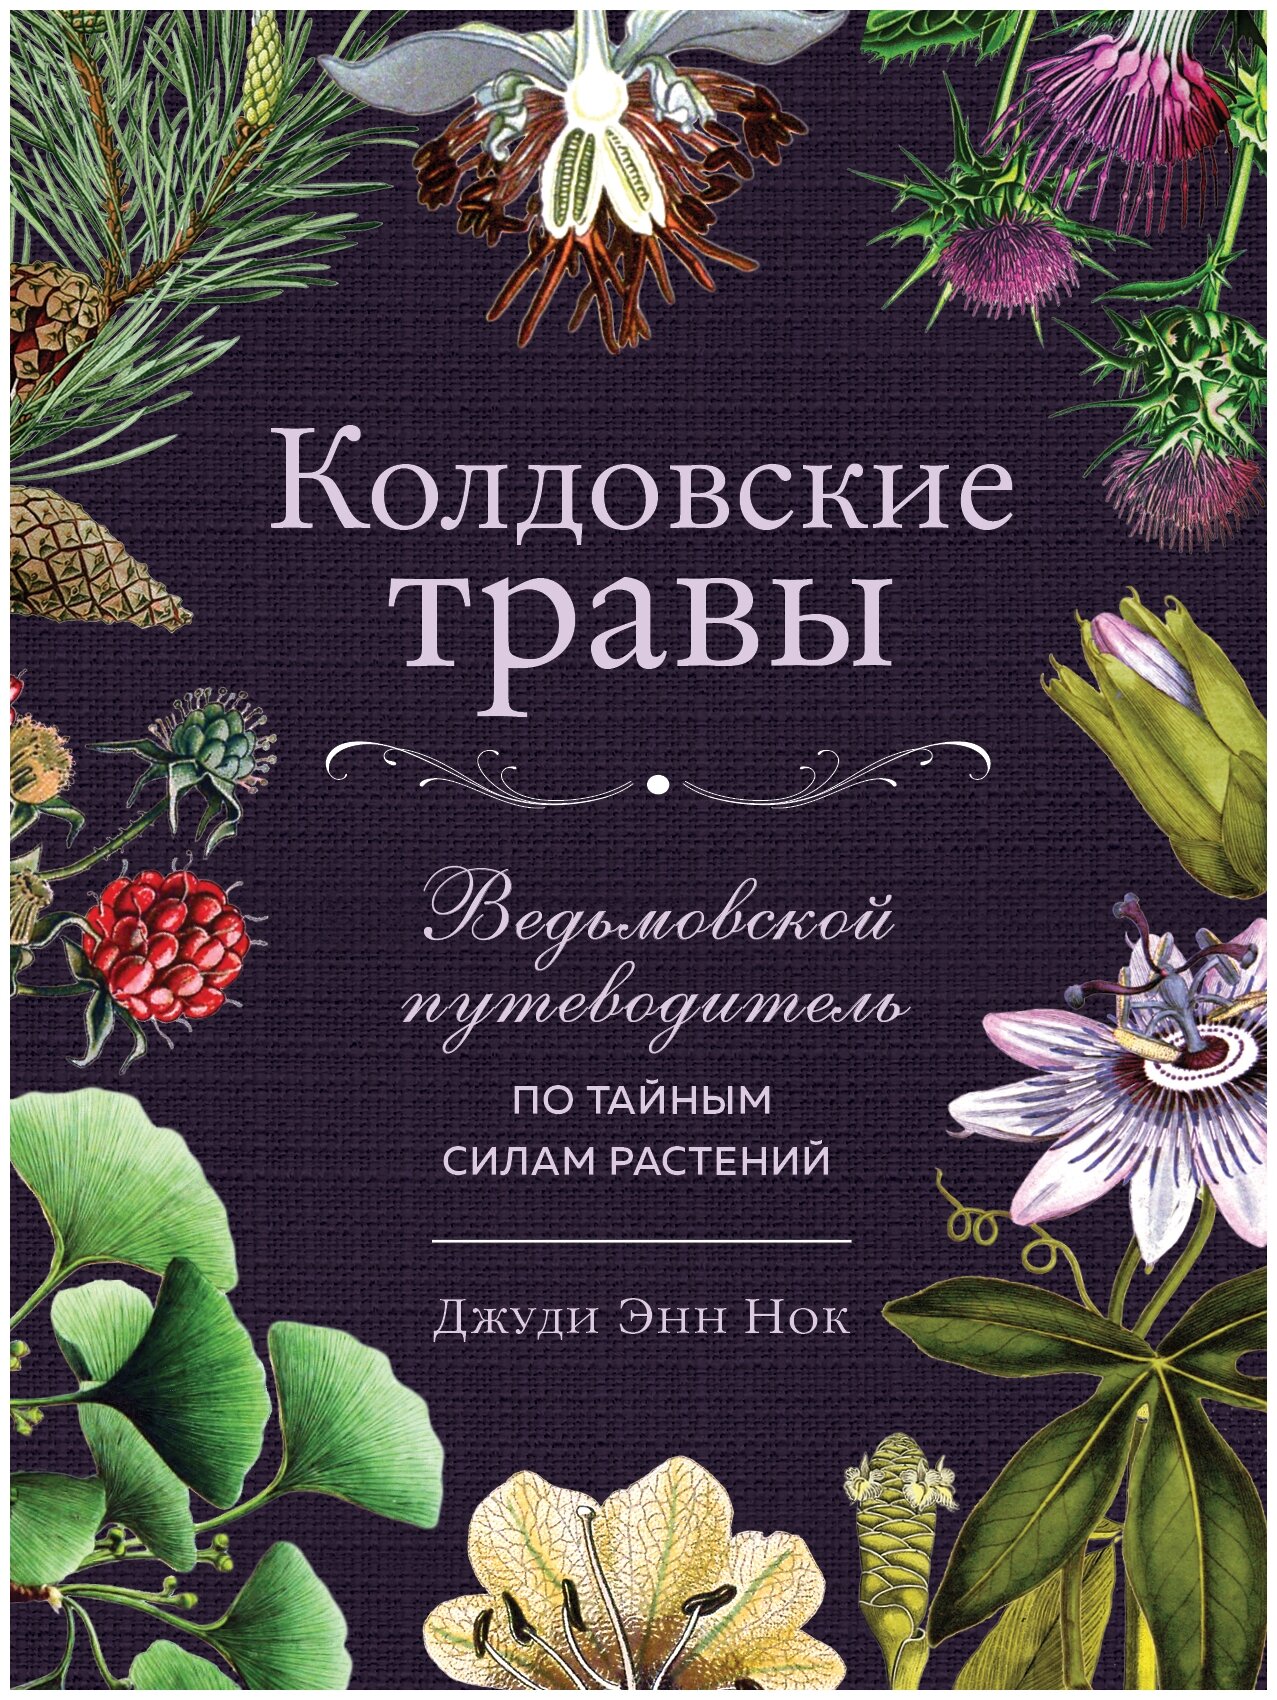 Нок Дж.Э. "Колдовские травы. Ведьмовской путеводитель по тайным силам растений"